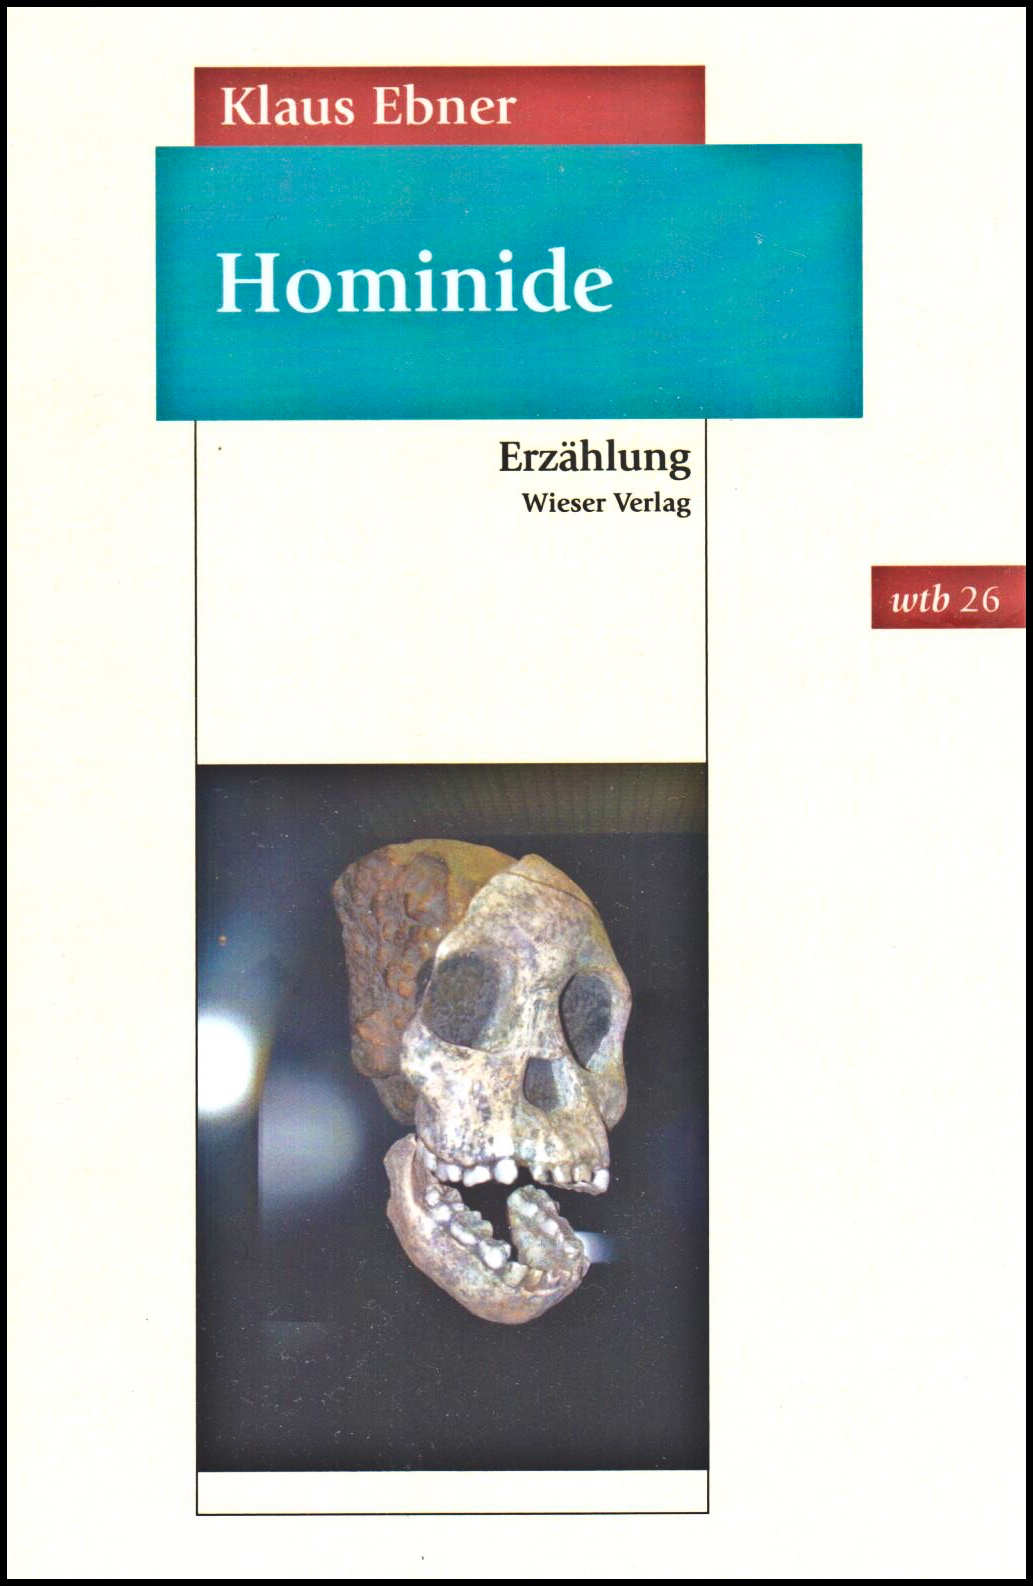 Hominide